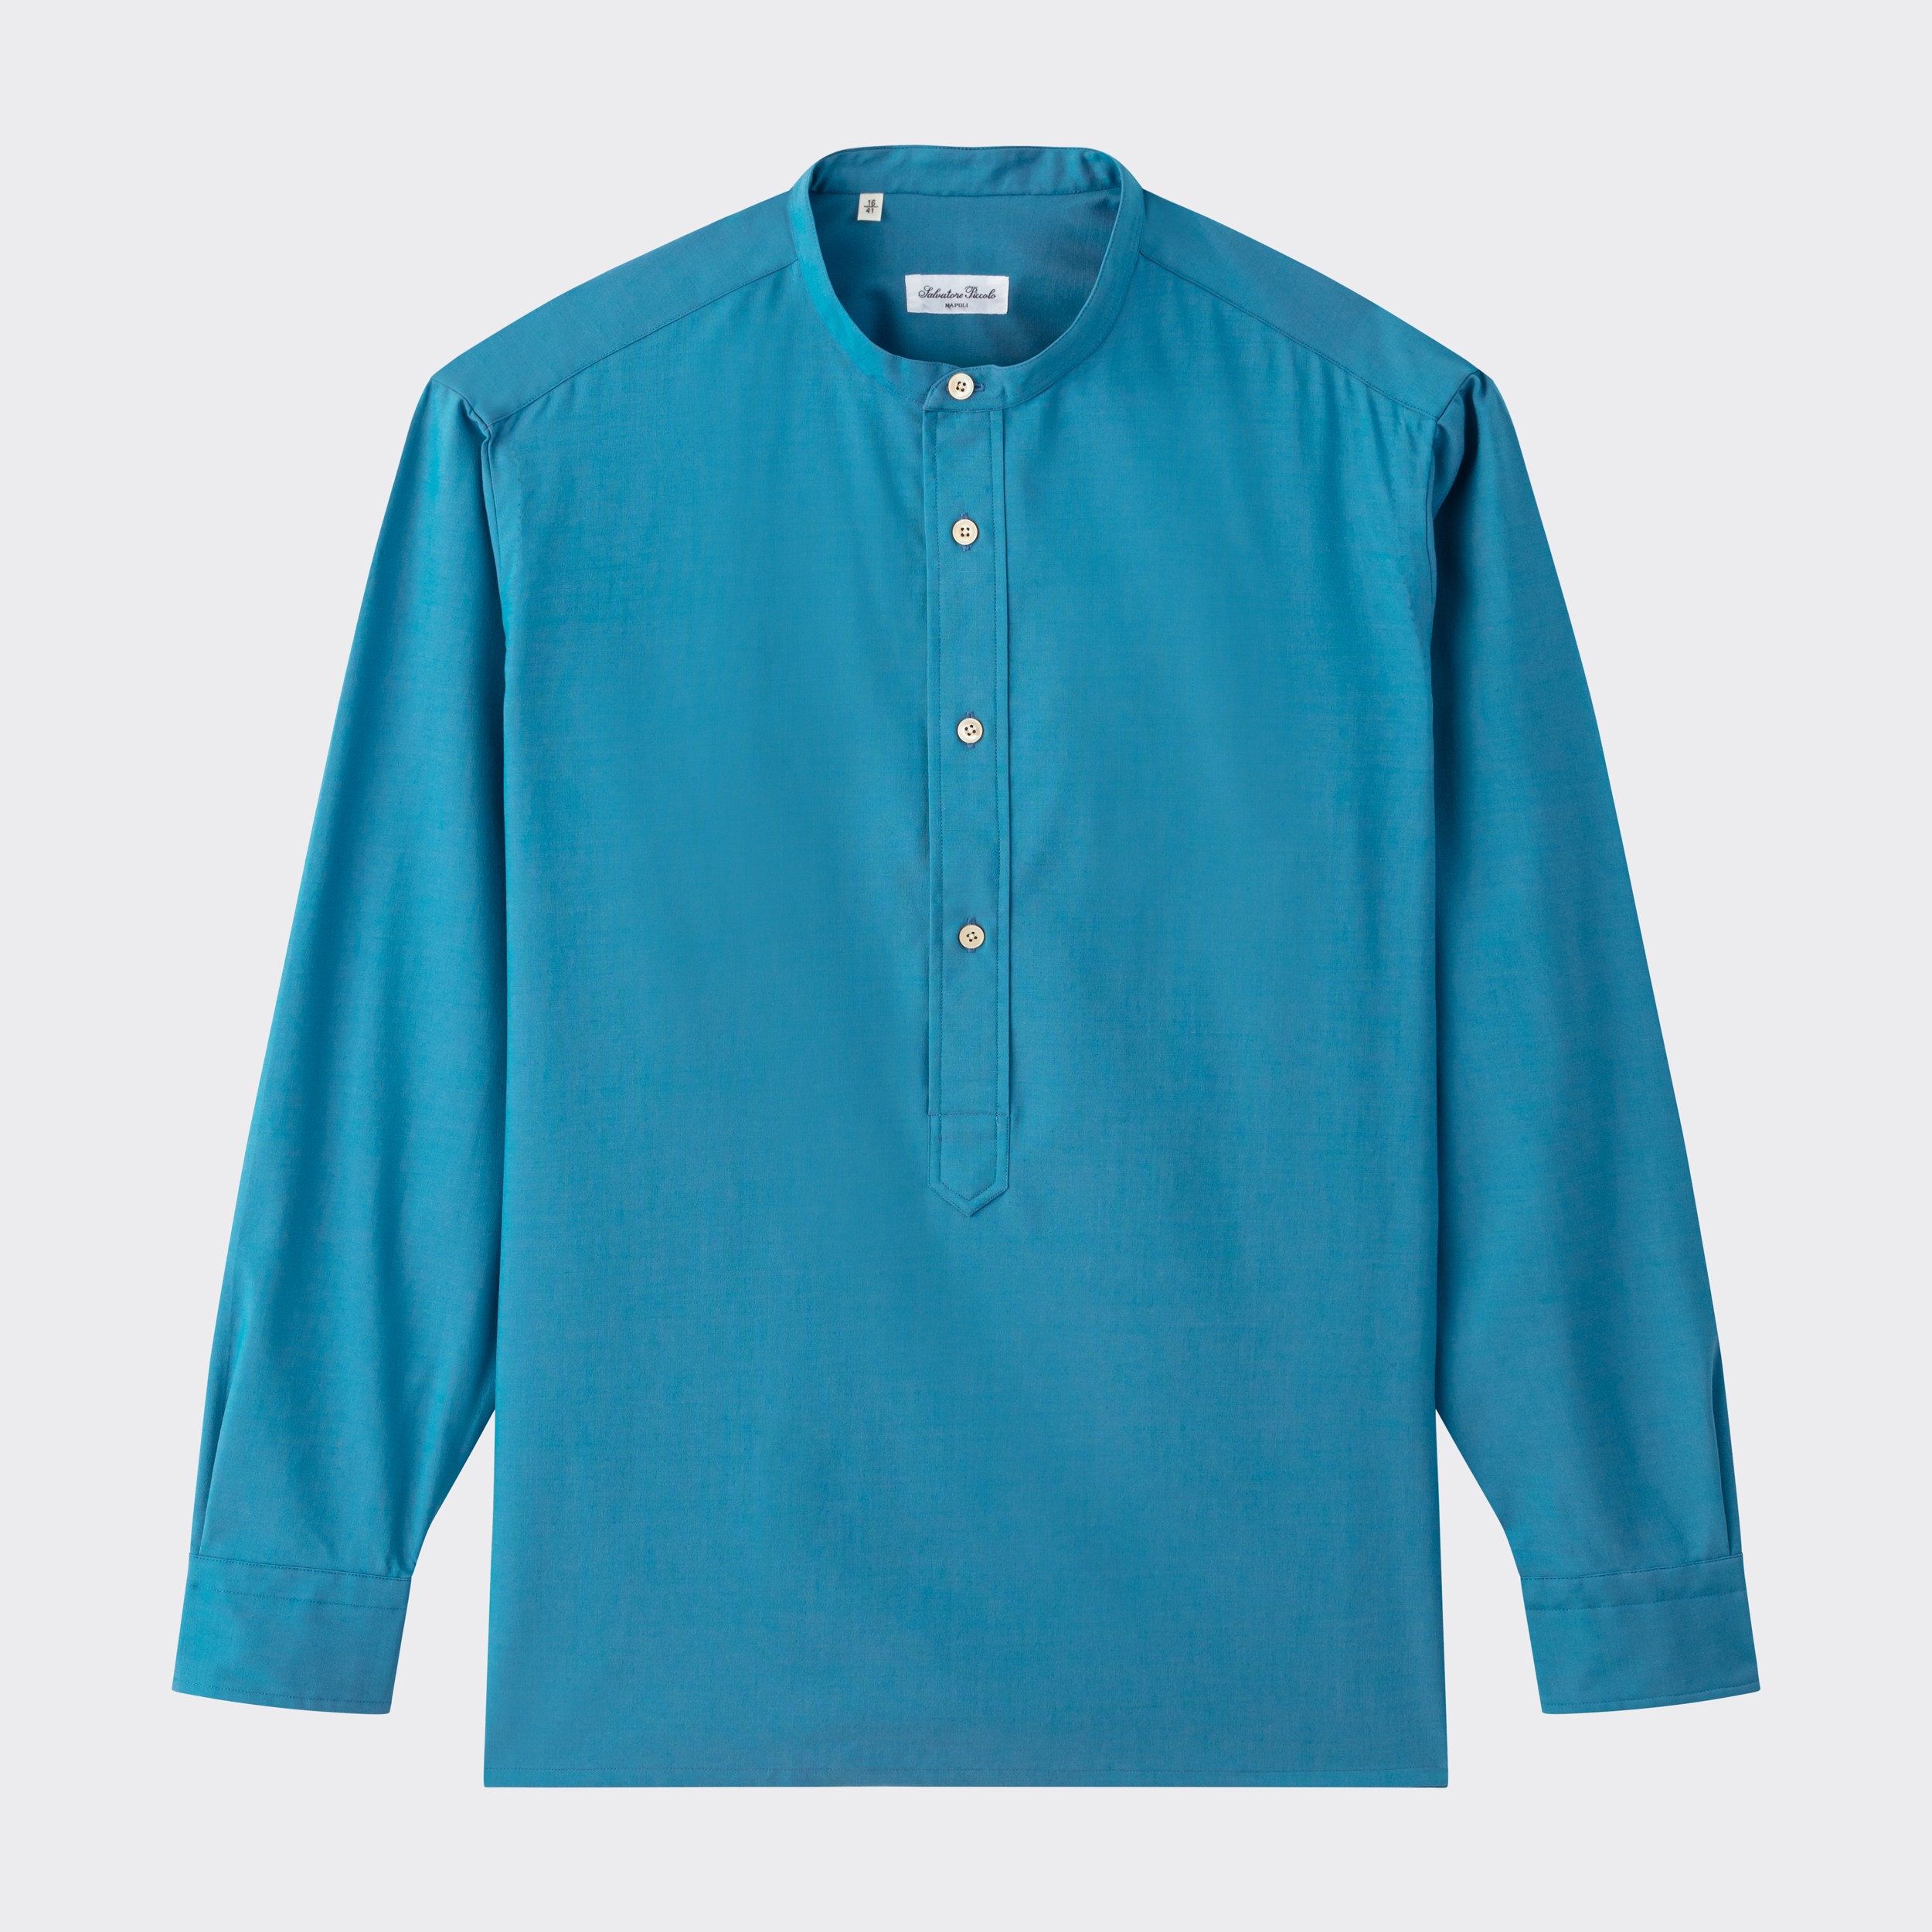 Salvatore Piccolo : Popover Shirt : Iridescent Blue